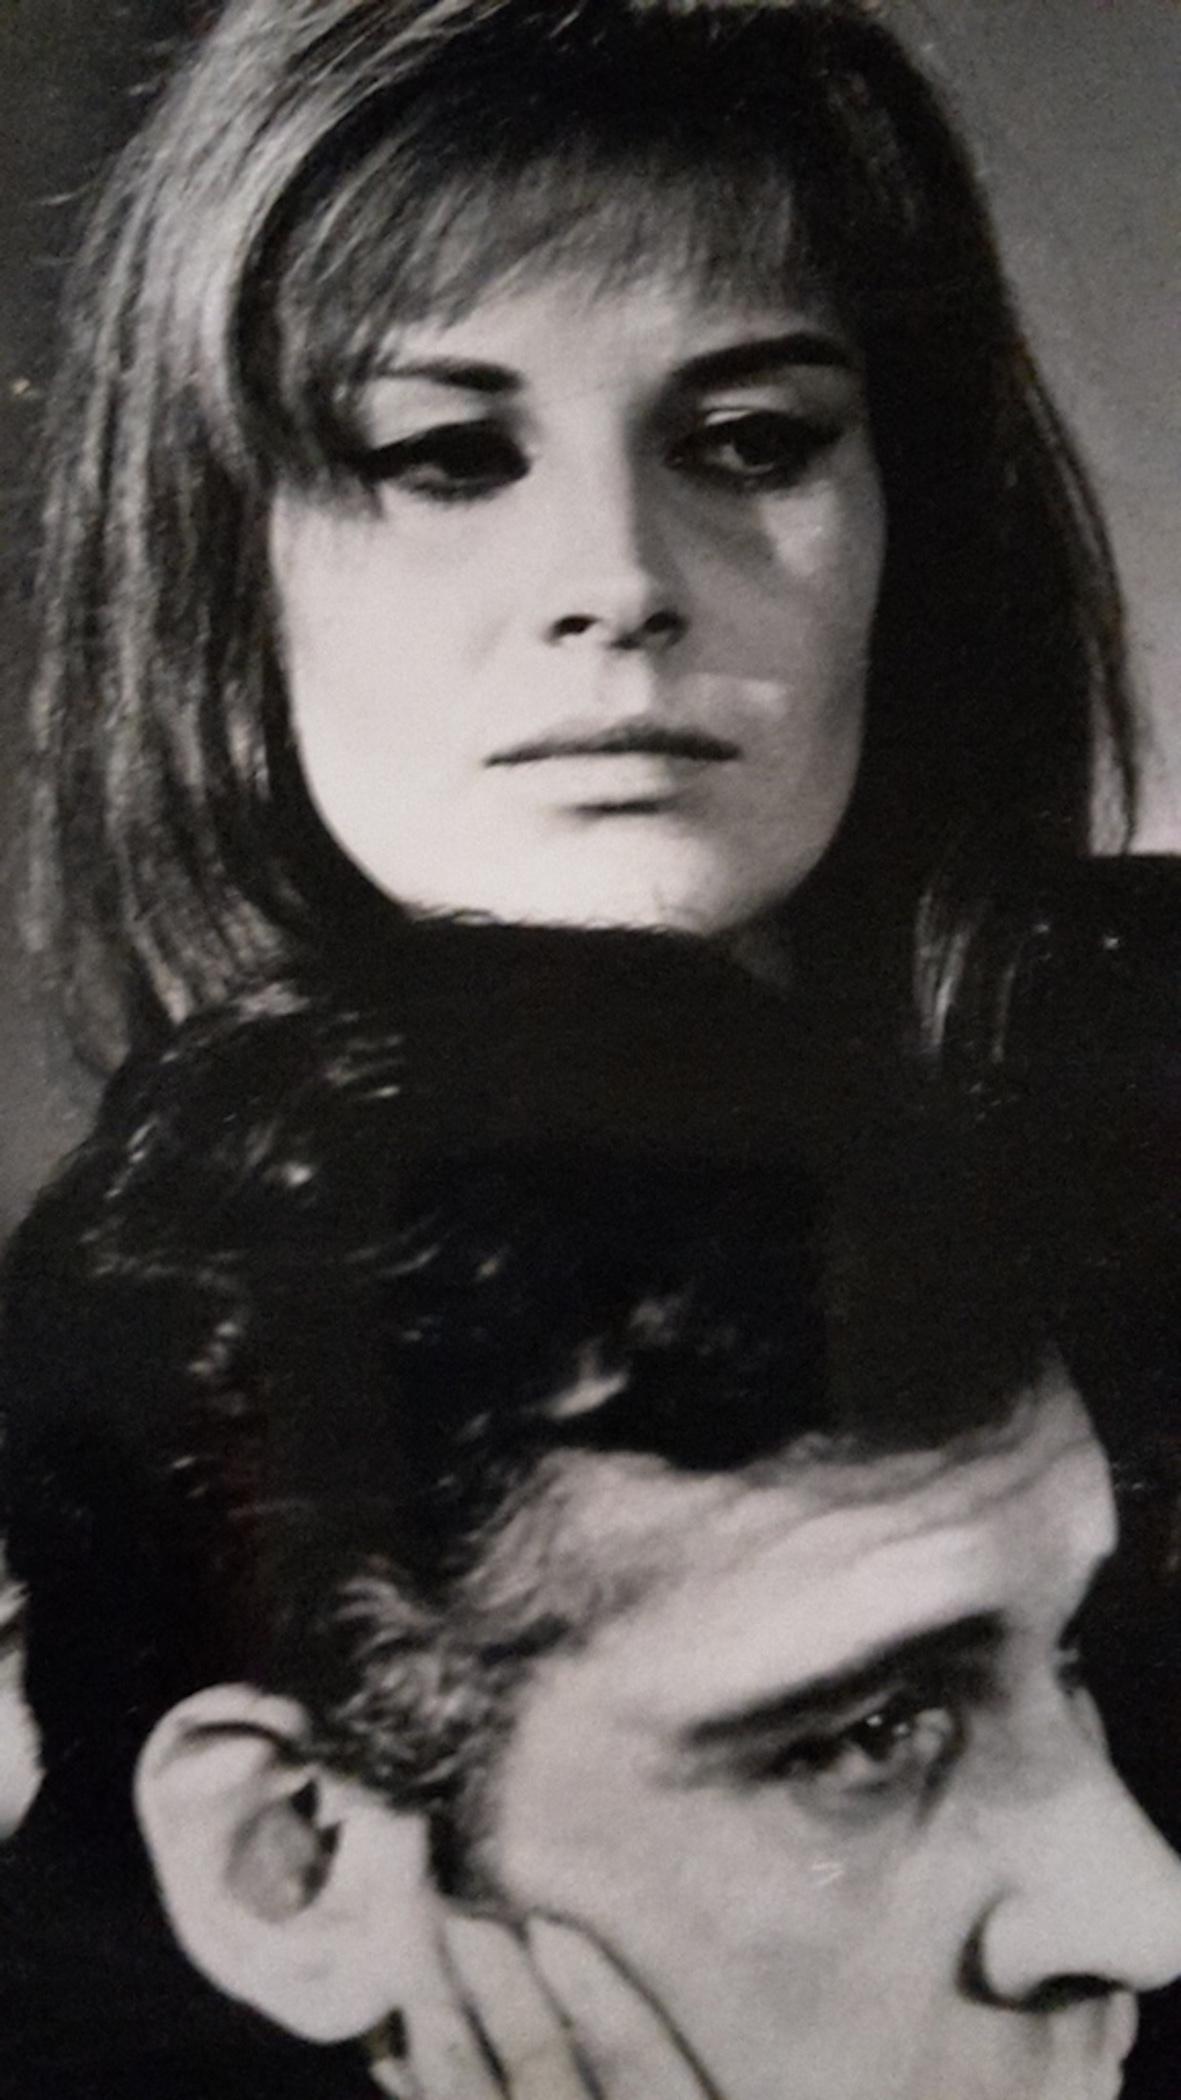 Unknown Portrait Photograph - The Italian Actress Antonella Lualdi- Historical Photo -1965